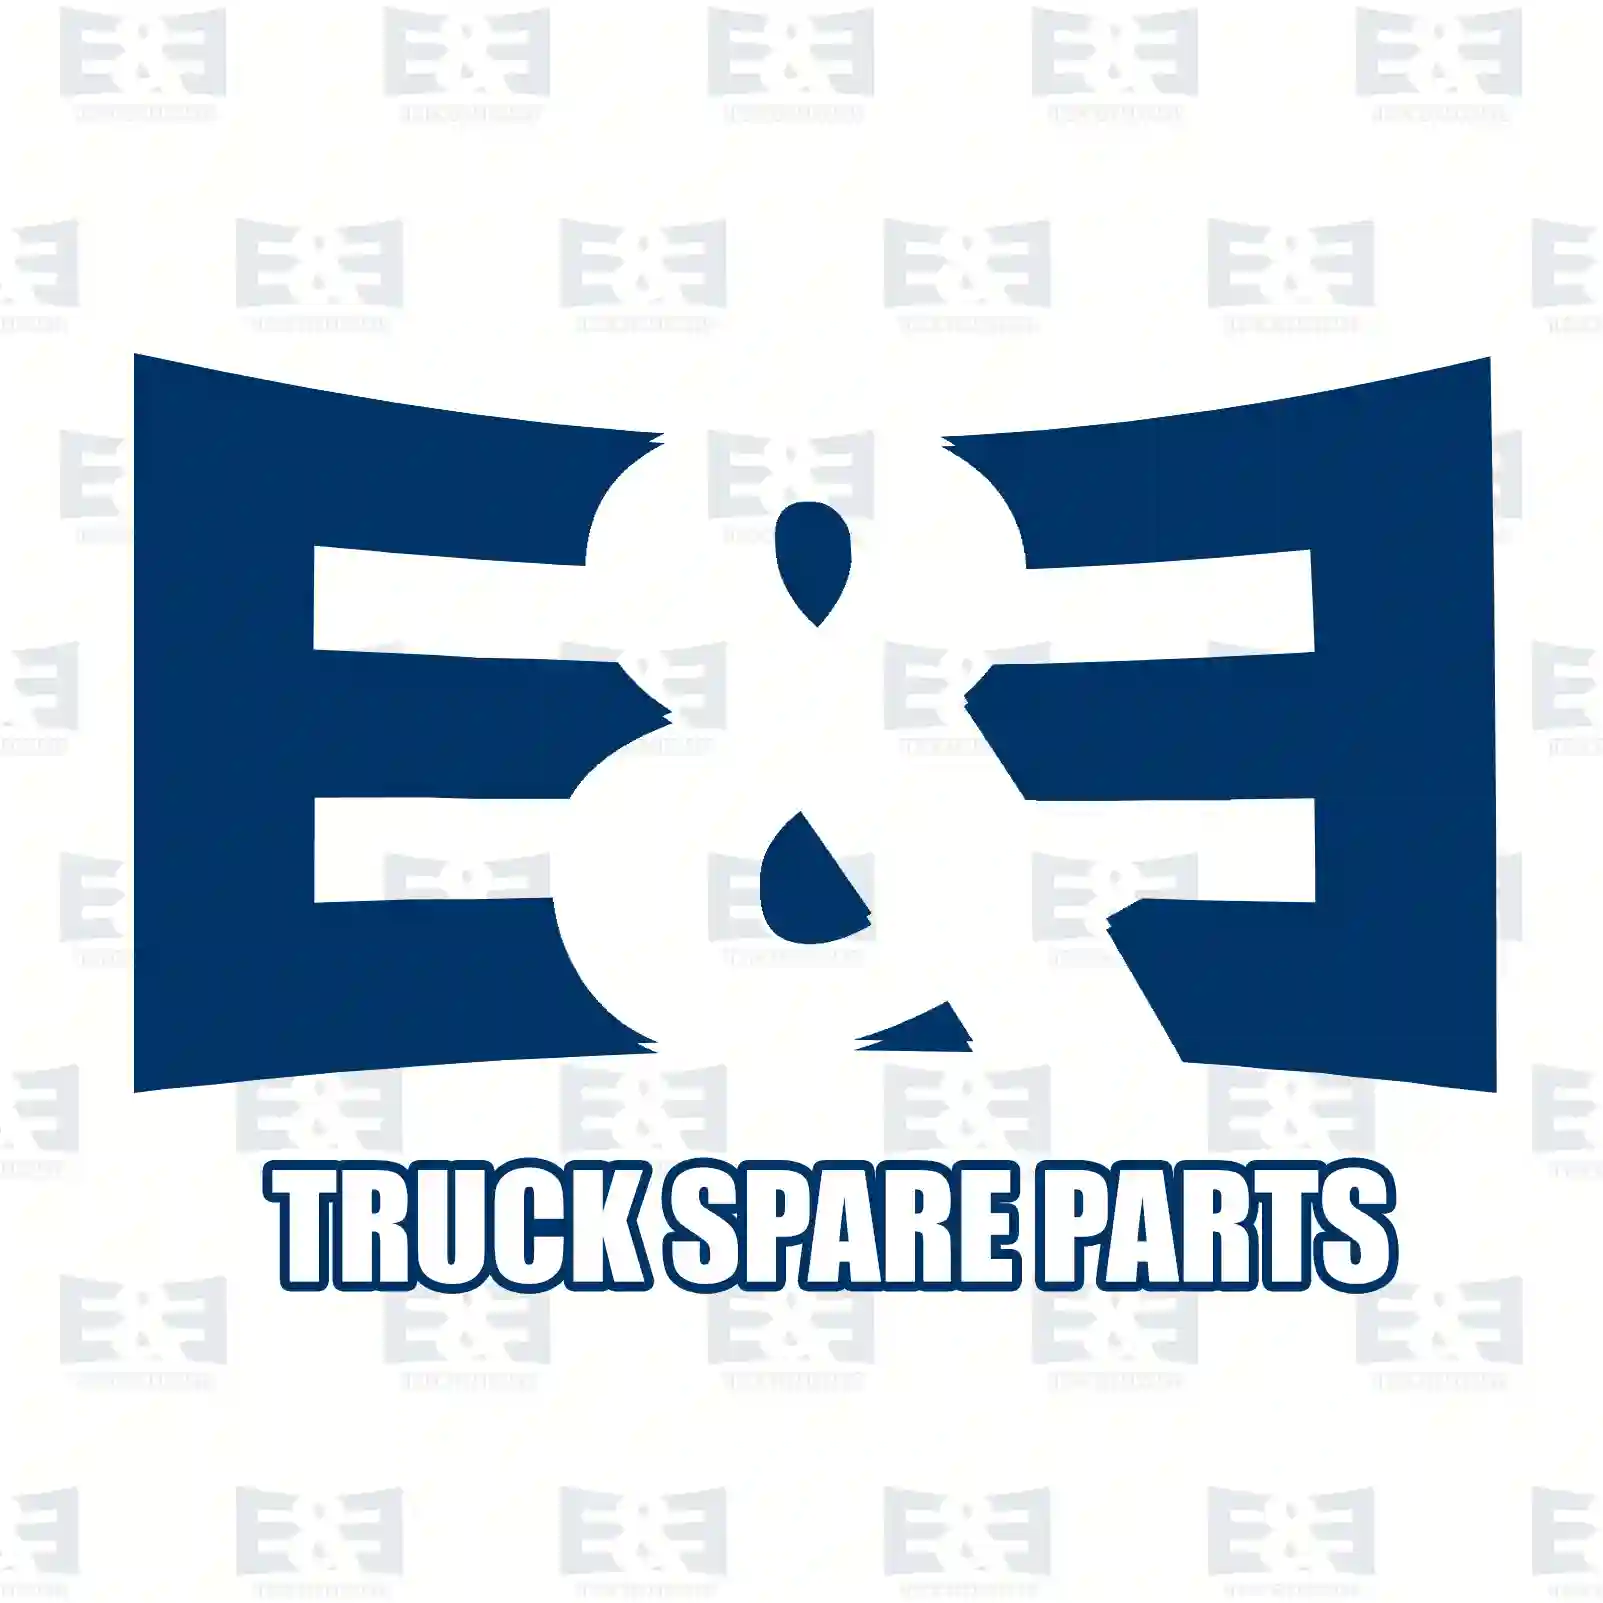 Stabilizer stay, rear, 2E2283835, 93197332, 56261-00Q0C, 4419304, 551100019R ||  2E2283835 E&E Truck Spare Parts | Truck Spare Parts, Auotomotive Spare Parts Stabilizer stay, rear, 2E2283835, 93197332, 56261-00Q0C, 4419304, 551100019R ||  2E2283835 E&E Truck Spare Parts | Truck Spare Parts, Auotomotive Spare Parts